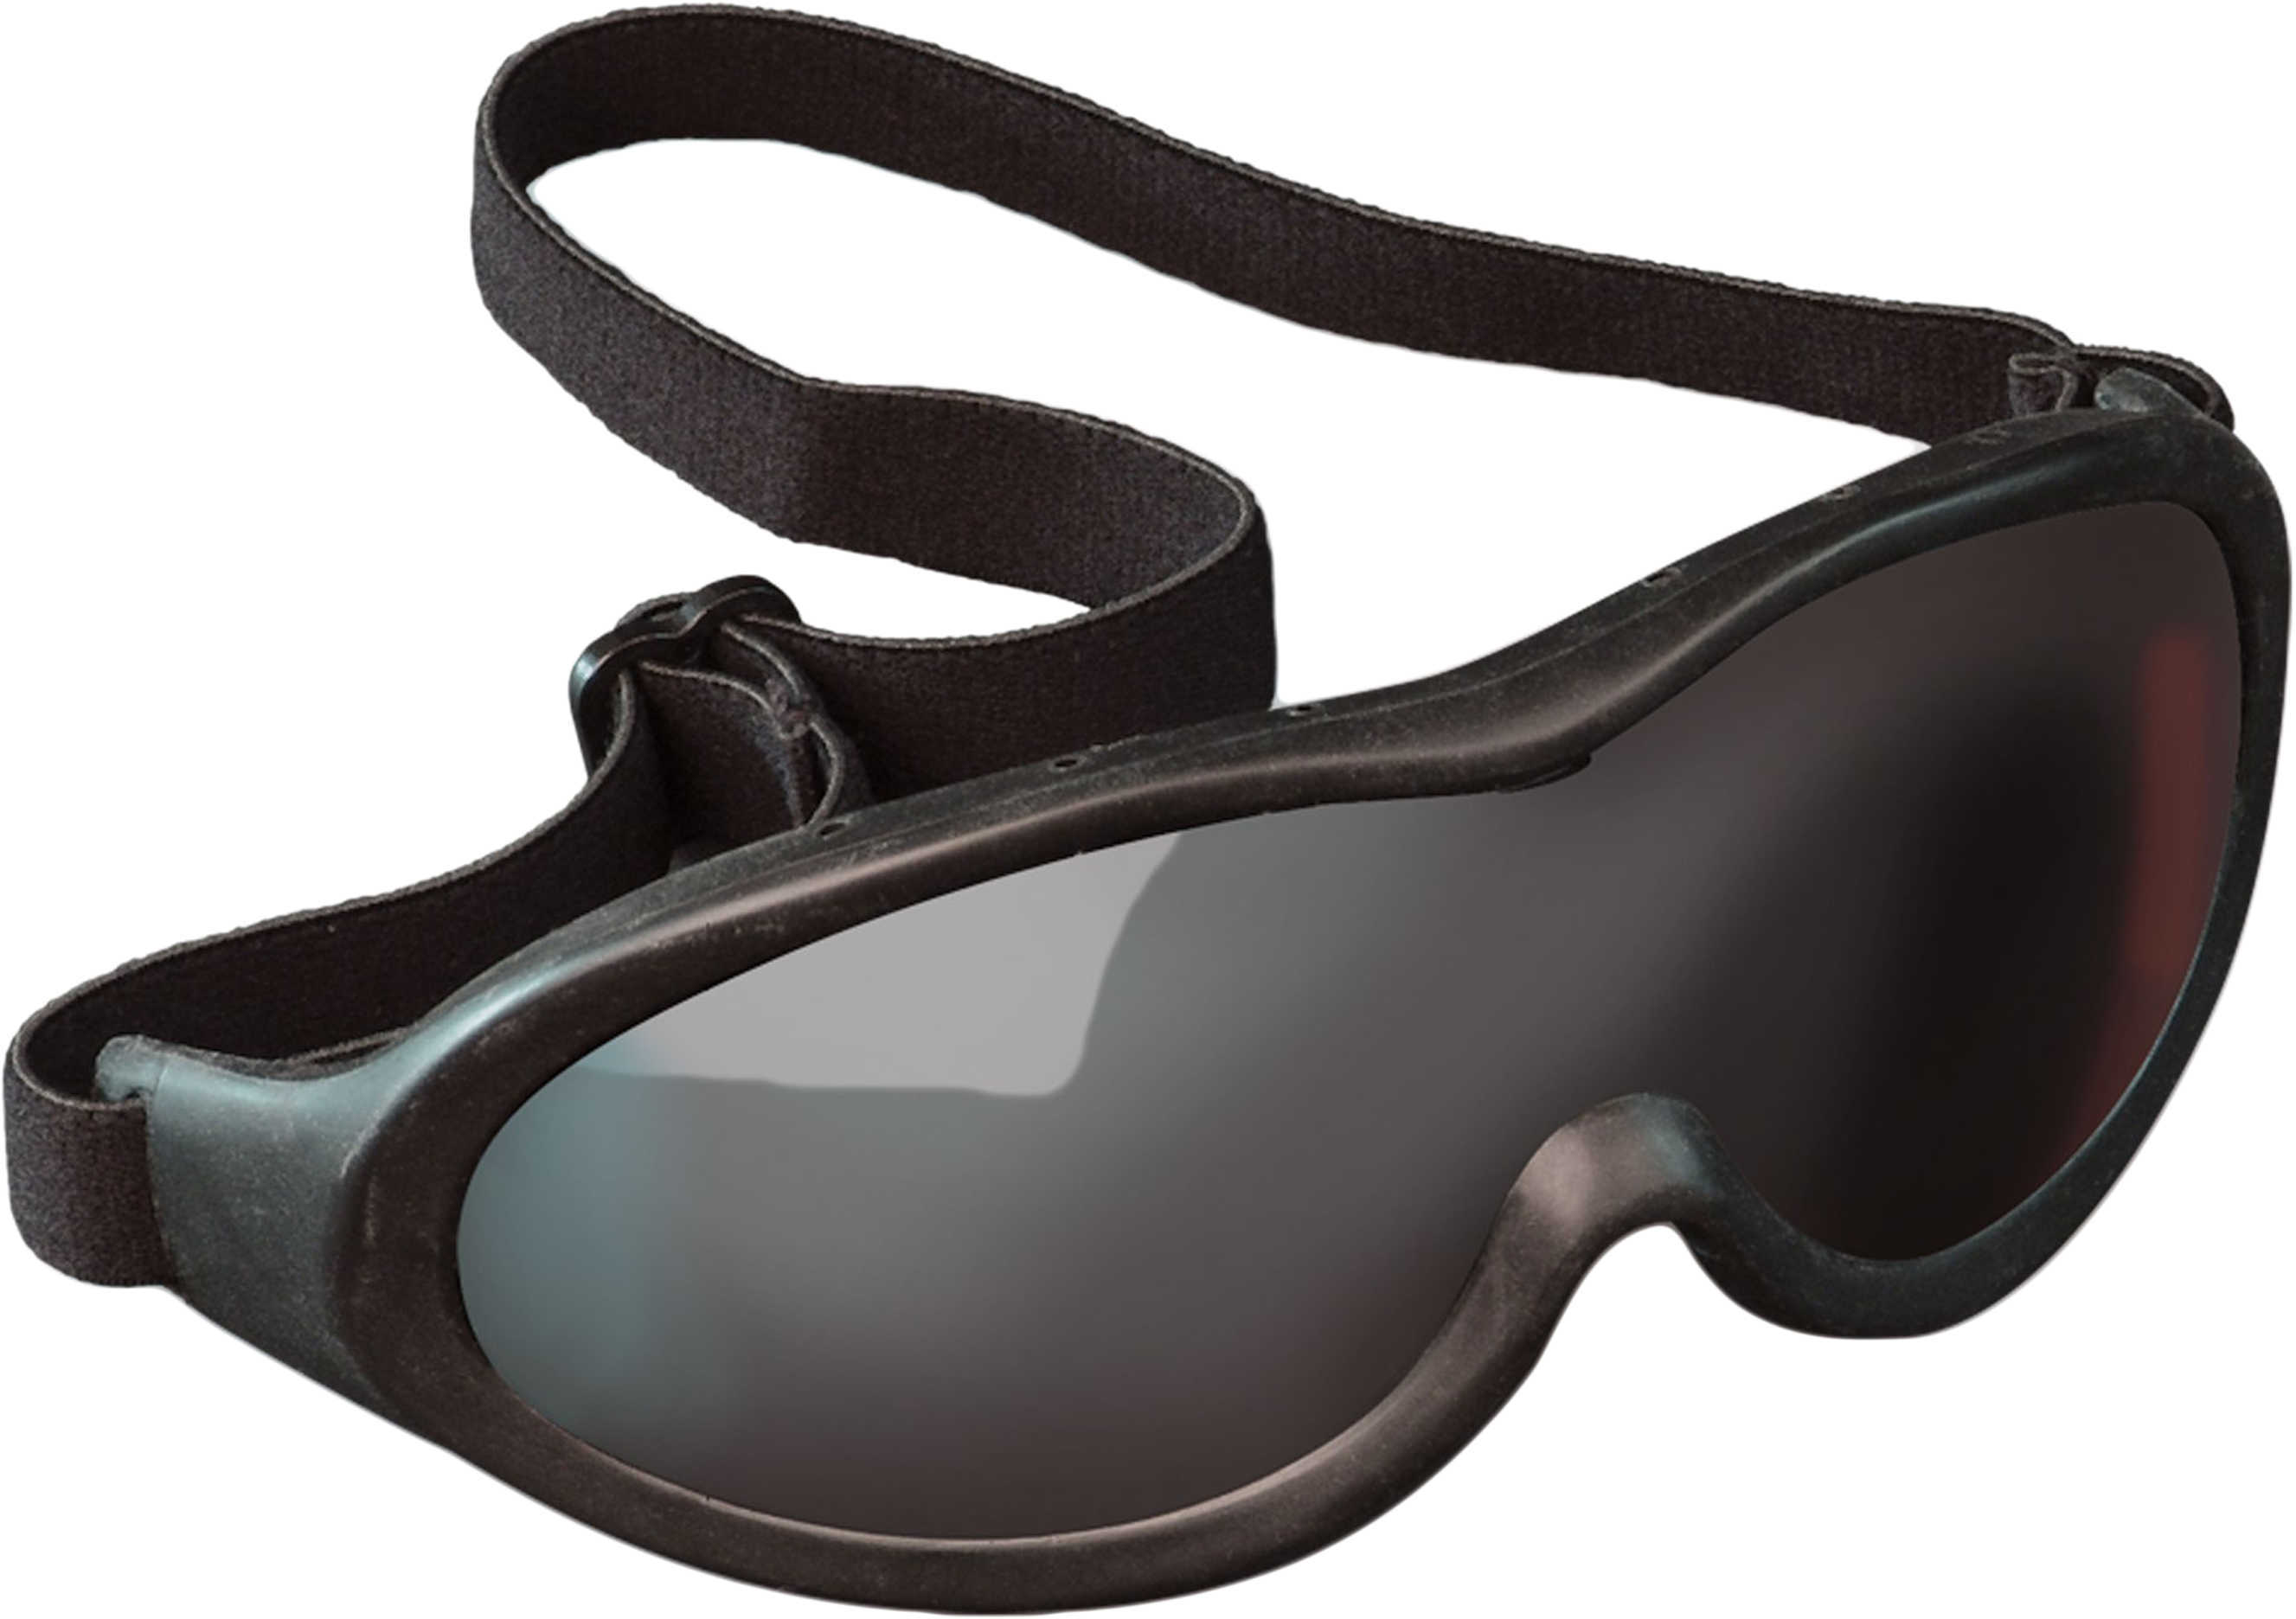 Crosman Soft Air Accessories Goggles SAG01